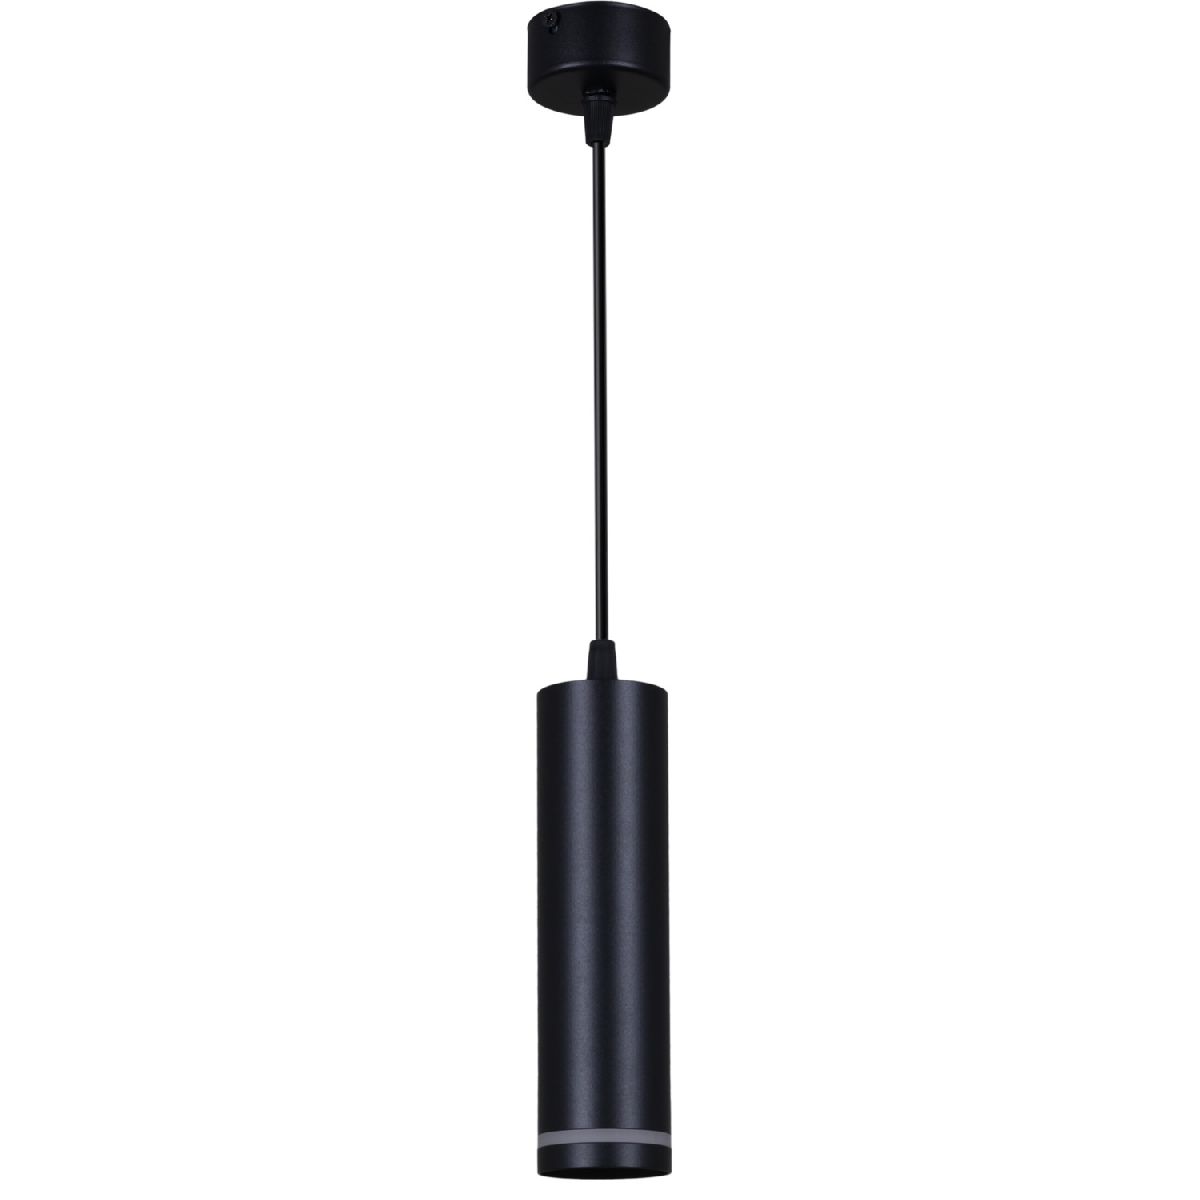 Подвесной светильник Reluce 16001-0.9-001LD 200mm GU10 BK